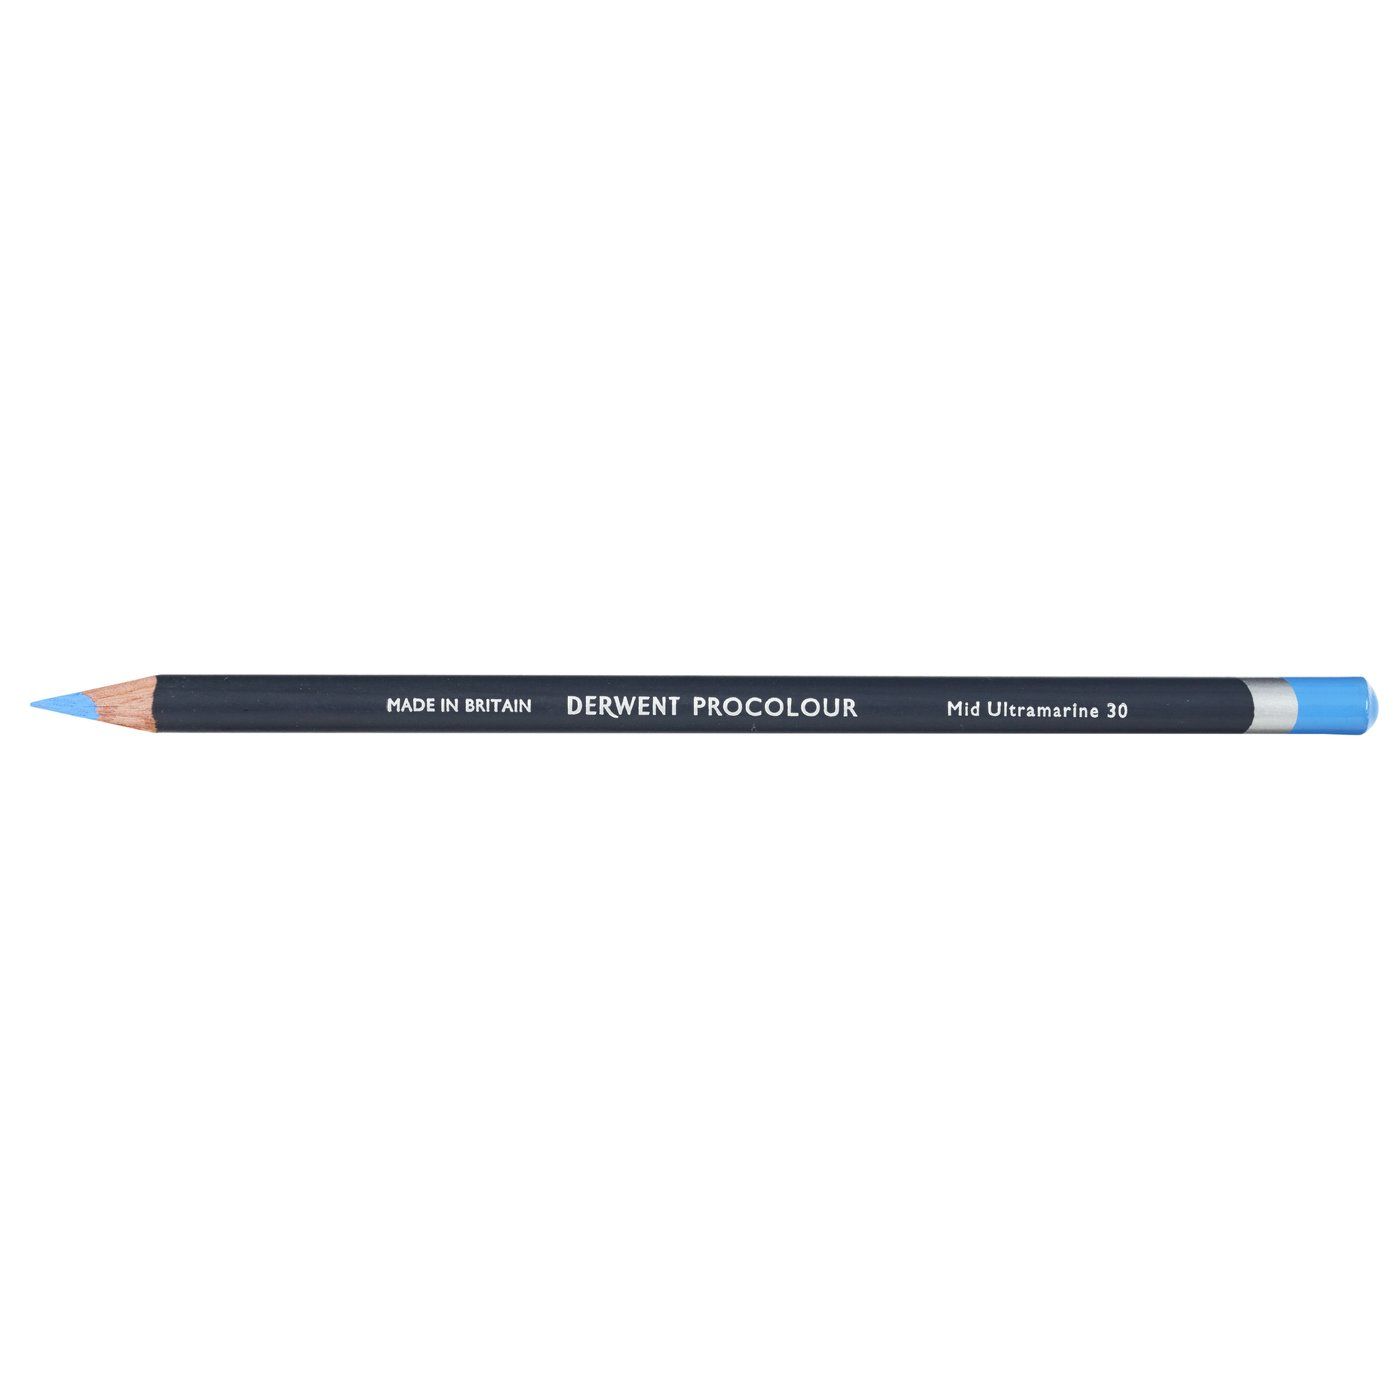 Derwent Procolour Pencil - 30 Mid Ultramarine